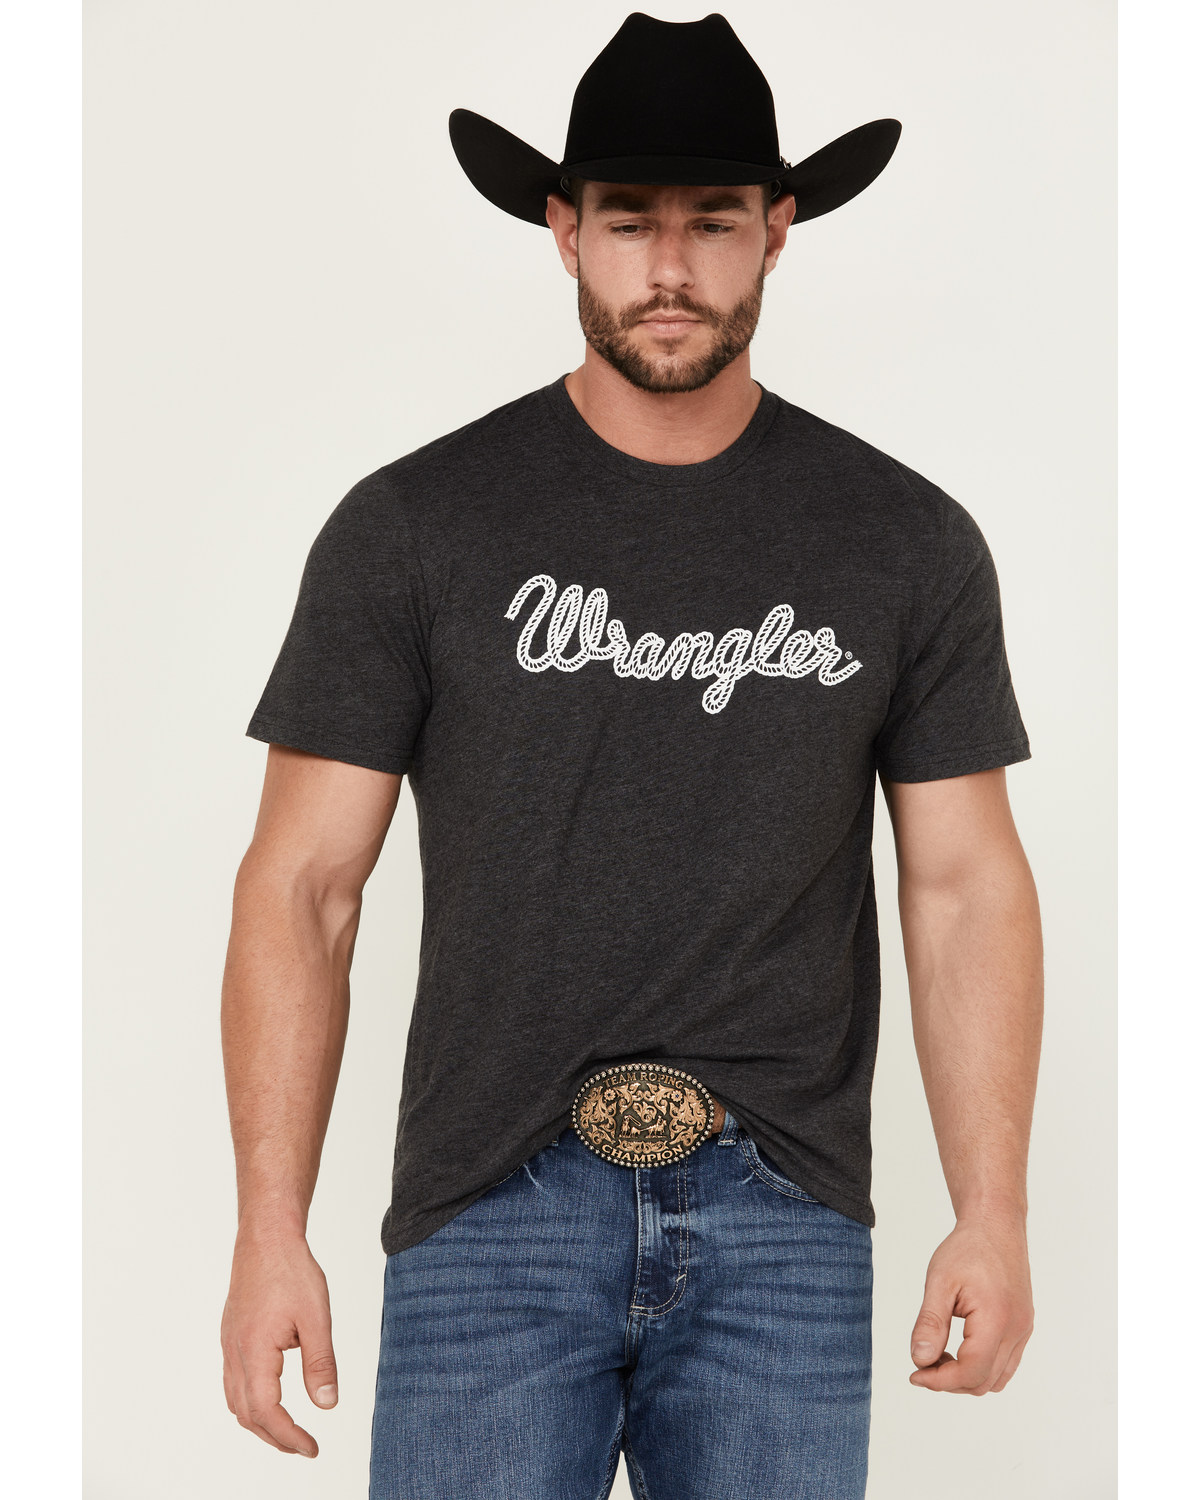 Wrangler Men's Rope Logo Short Sleeve Graphic Print T-Shirt